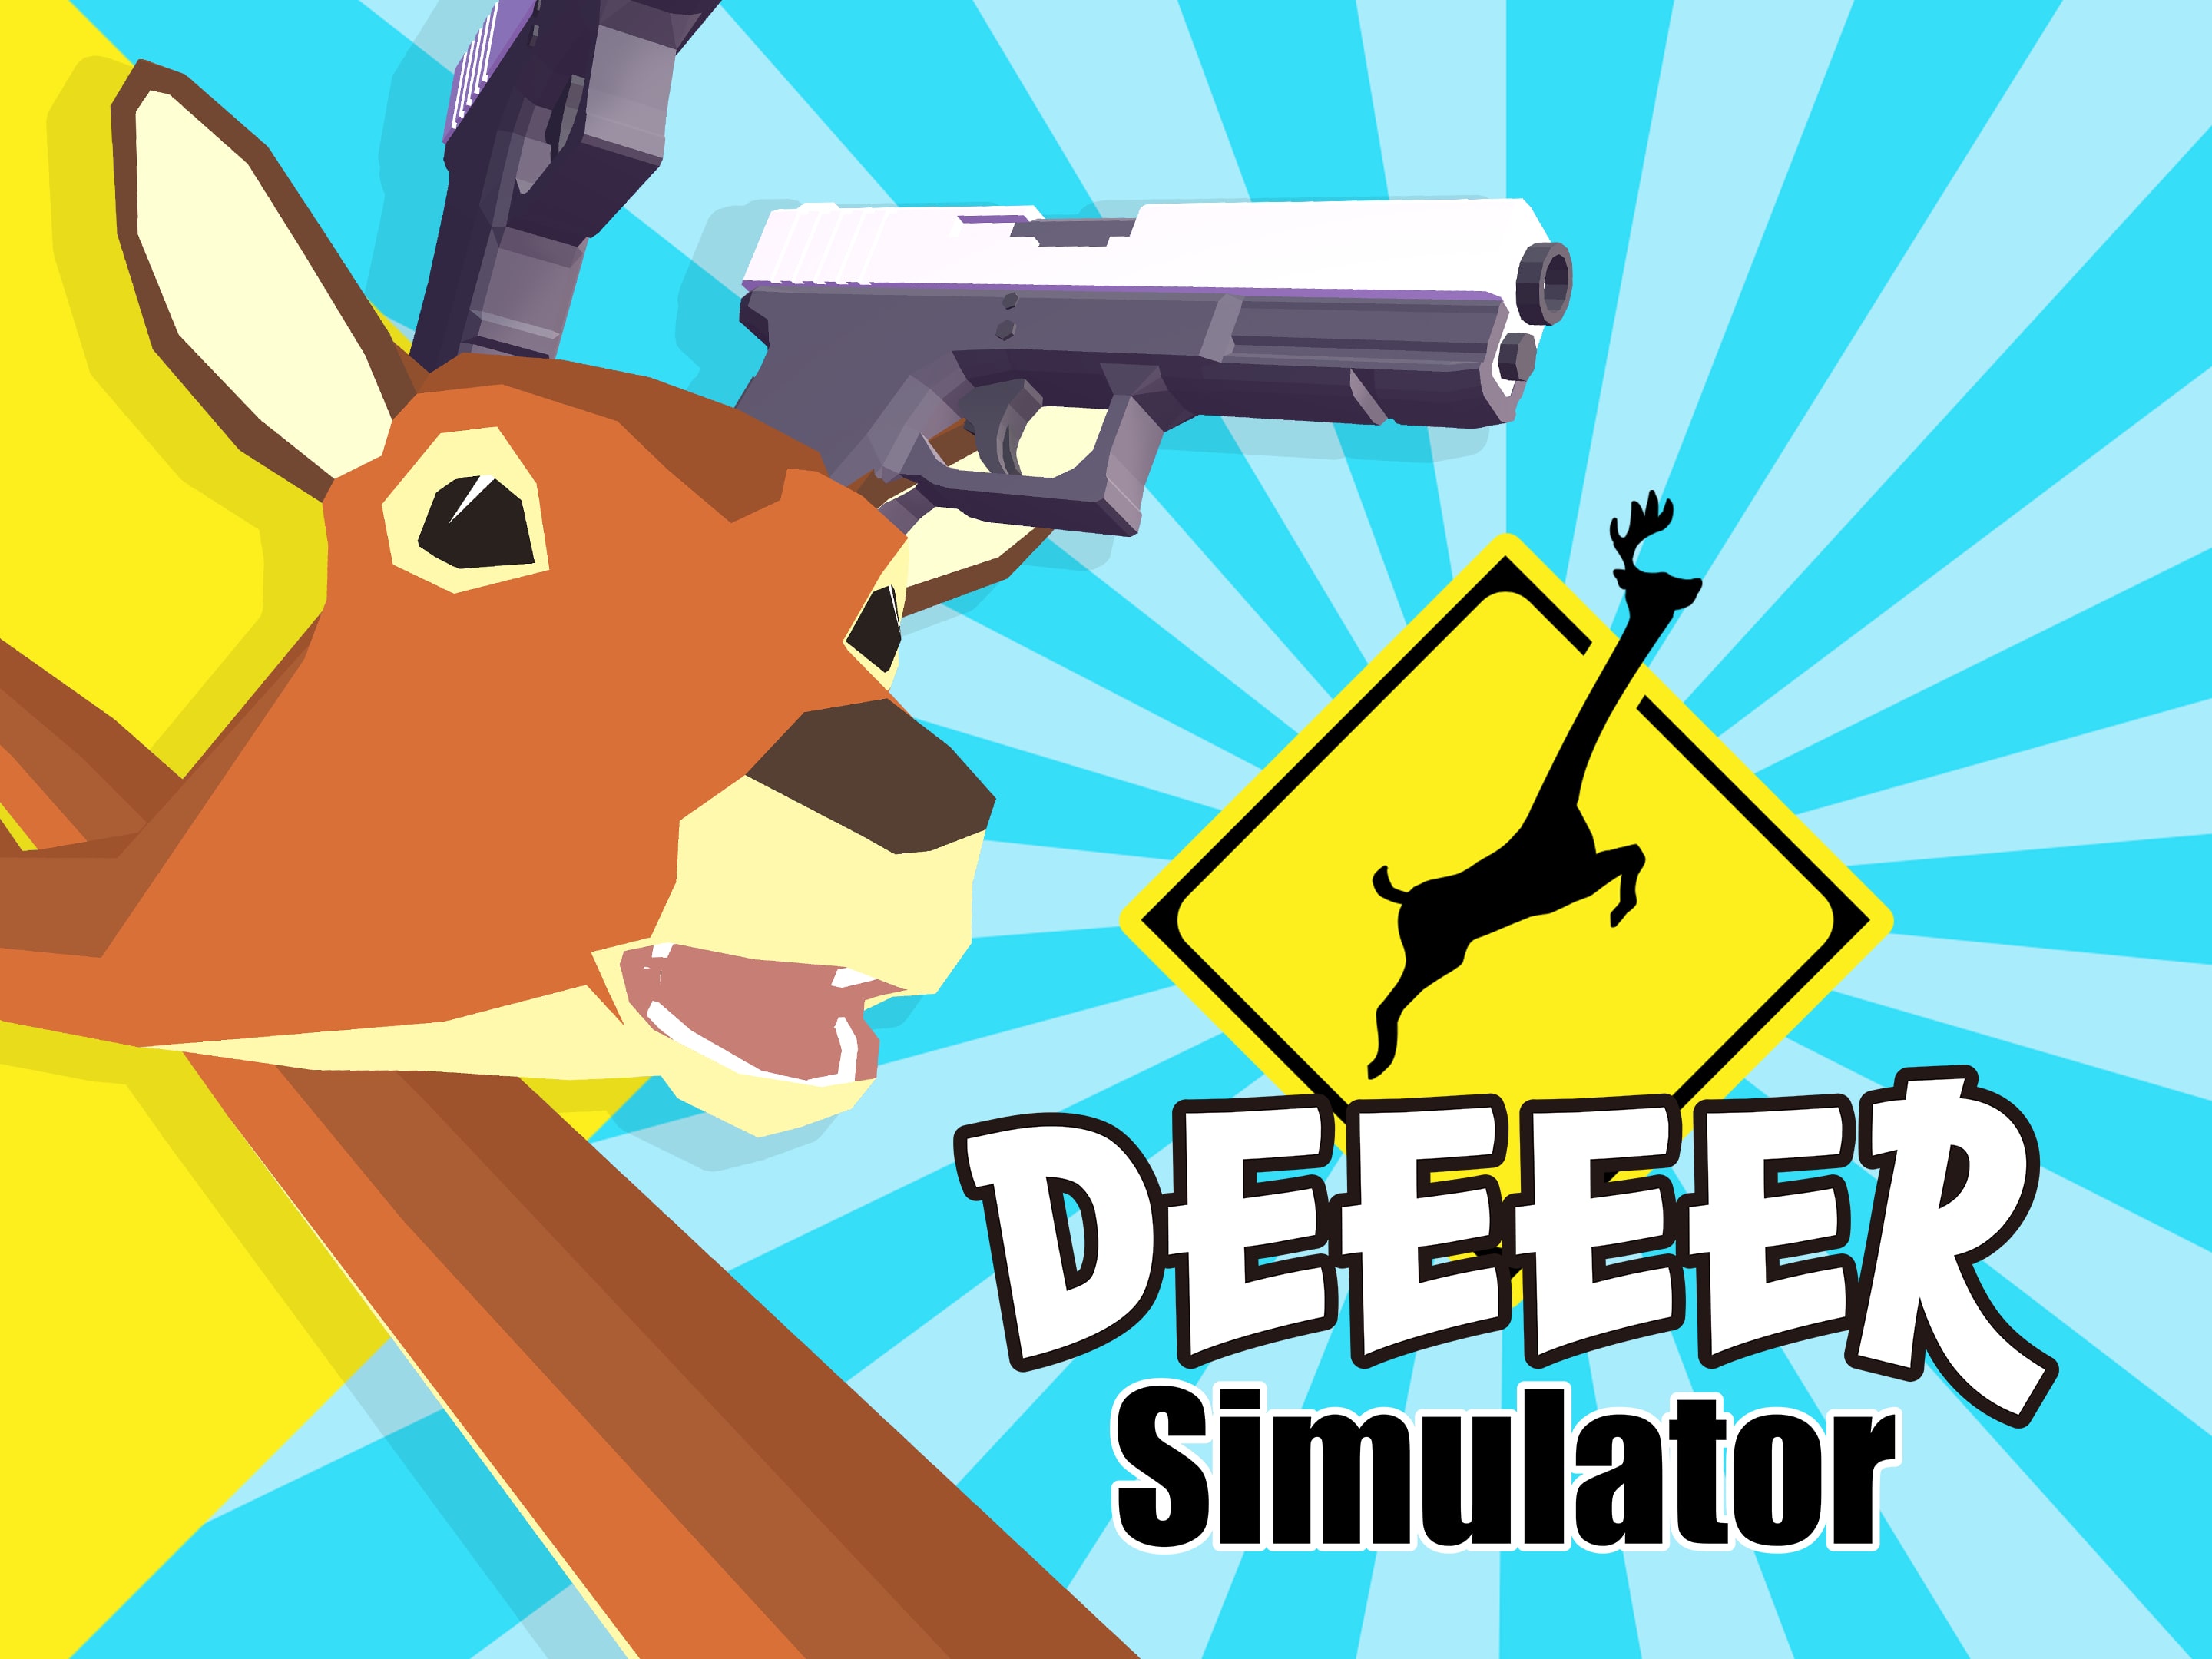 DEEEER Simulator: Your Average Everyday Deer Game, PlayStation 4, Merge  Games, 8193355021440 